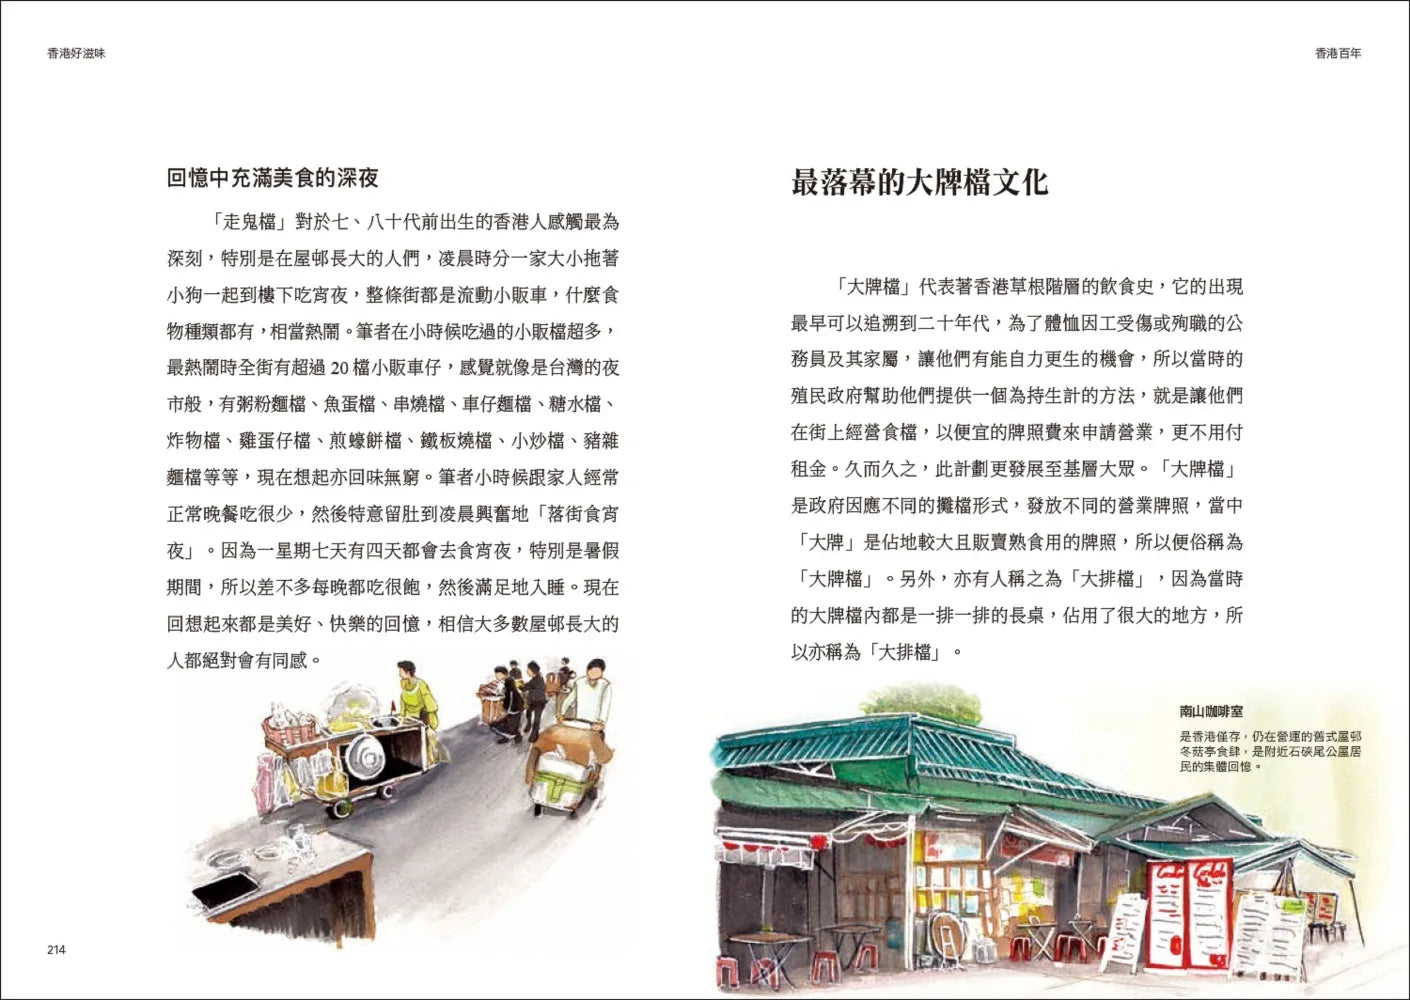 A Century of Hong Kong • 香港百年：住公屋、飲杯茶、賭馬仔，尋訪在地舊情懷，重溫久違人情味